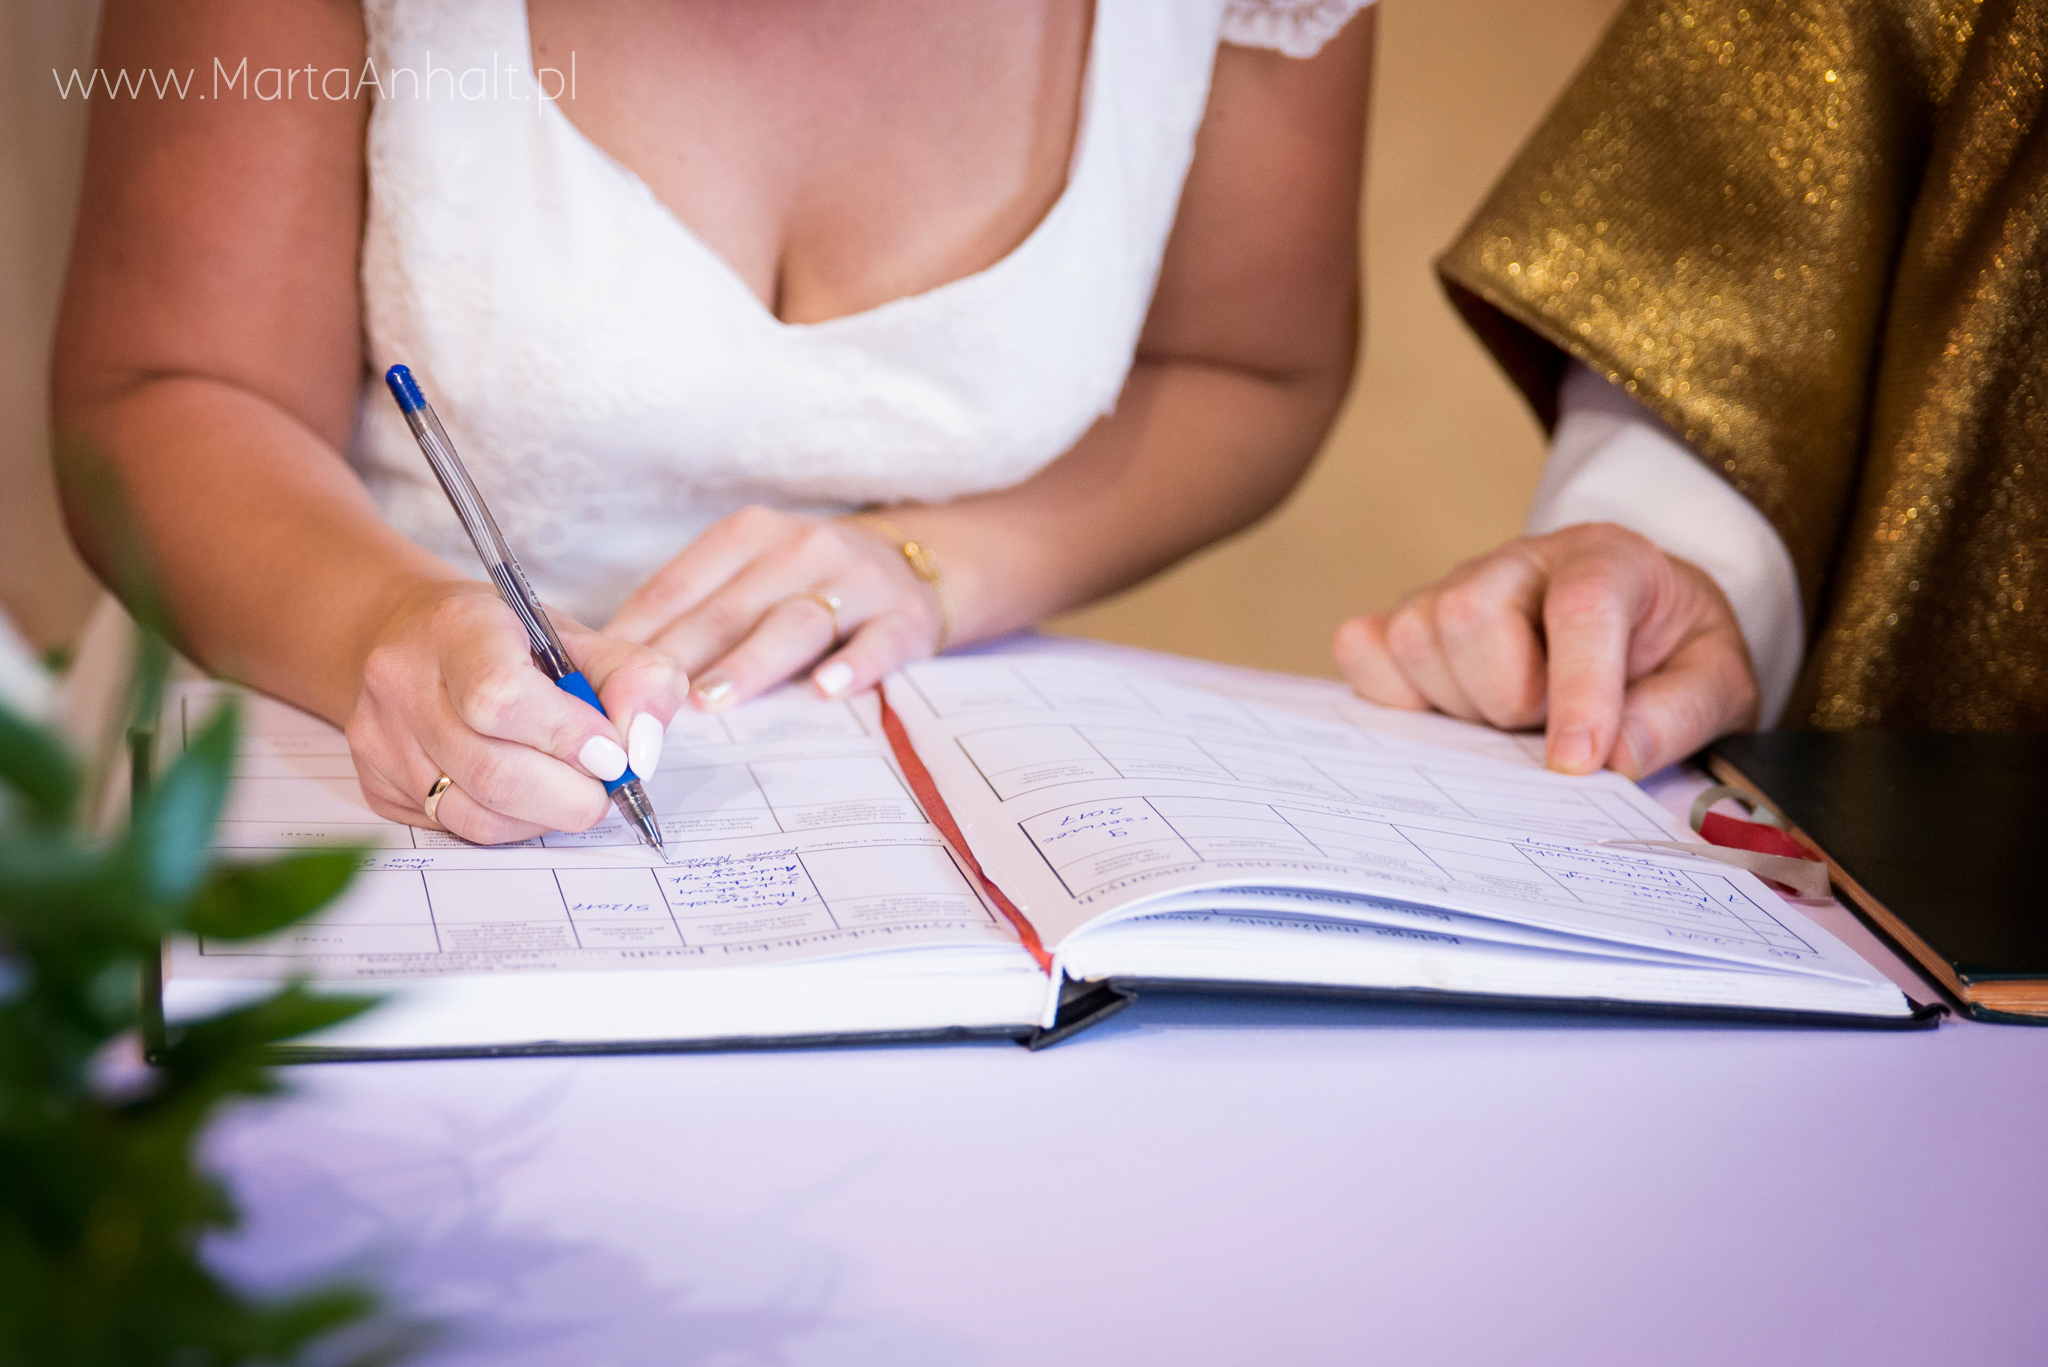 Panna Młoda podpisuje dokumenty w kościele po złożeniu przysięgi małżeńskiej